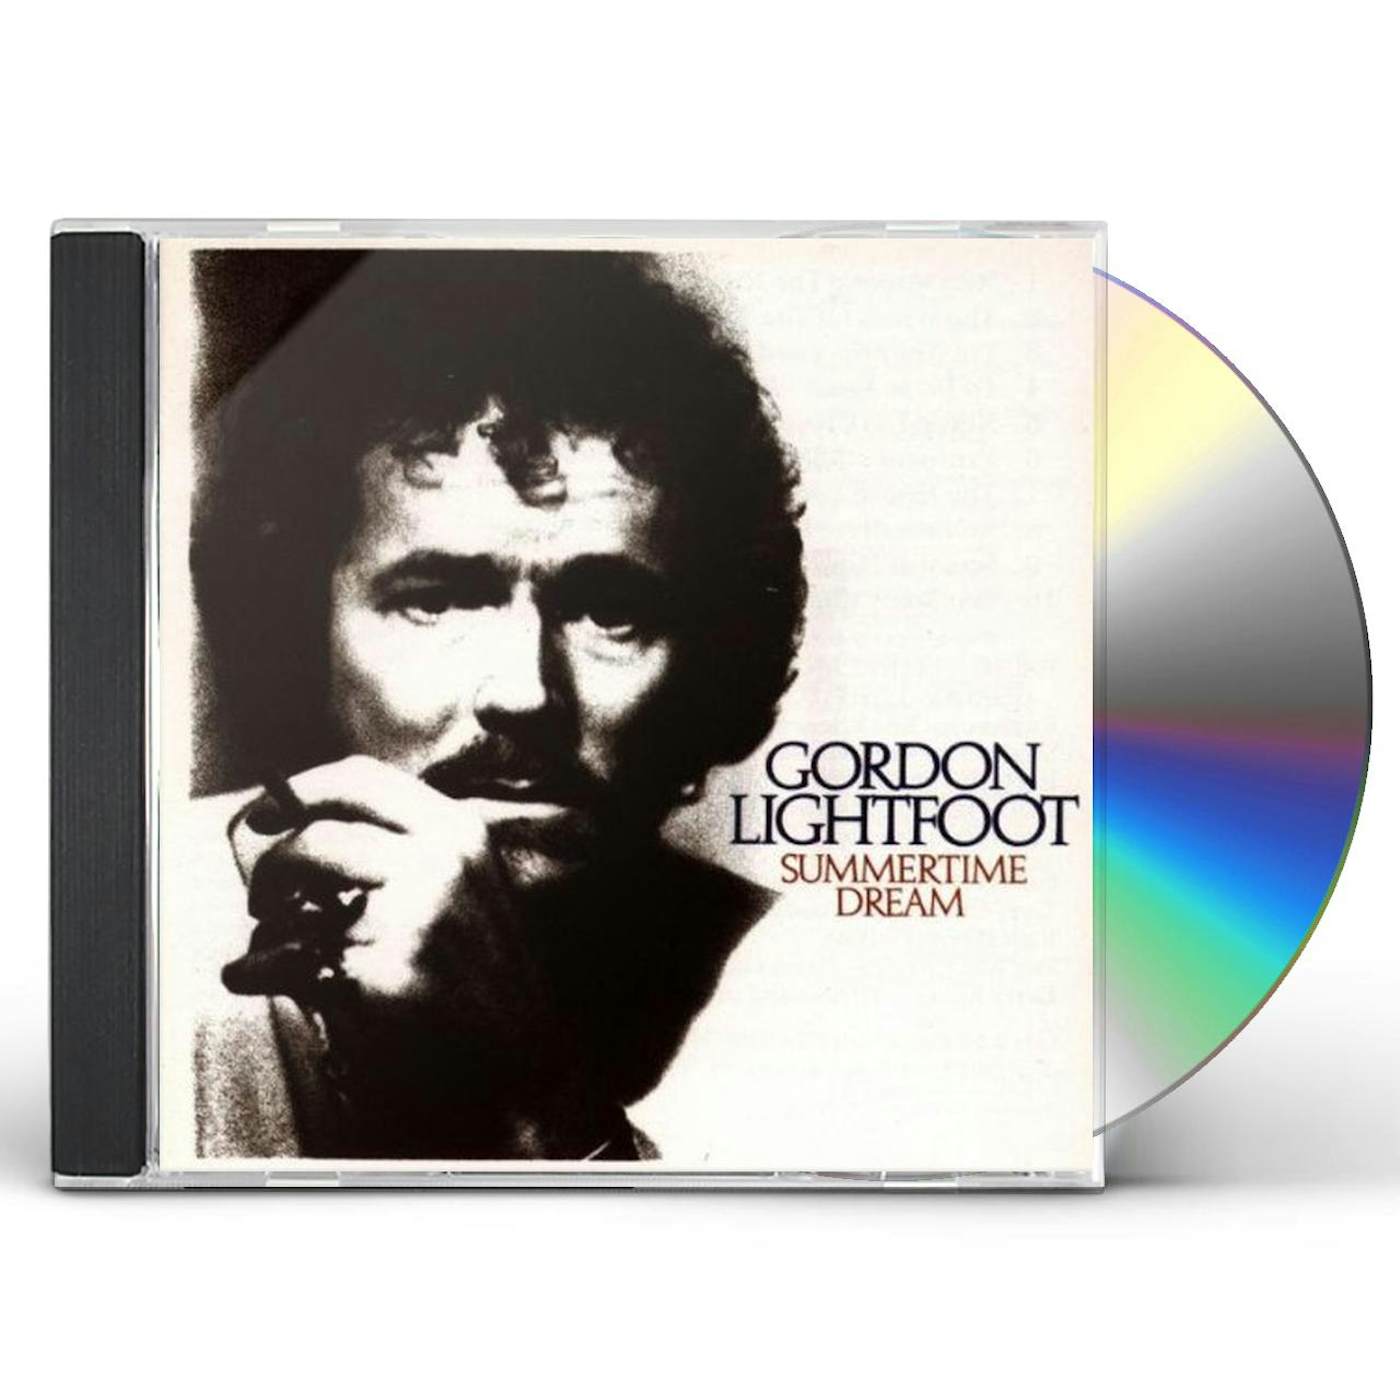 Gordon Lightfoot SUMMERTIME DREAM CD